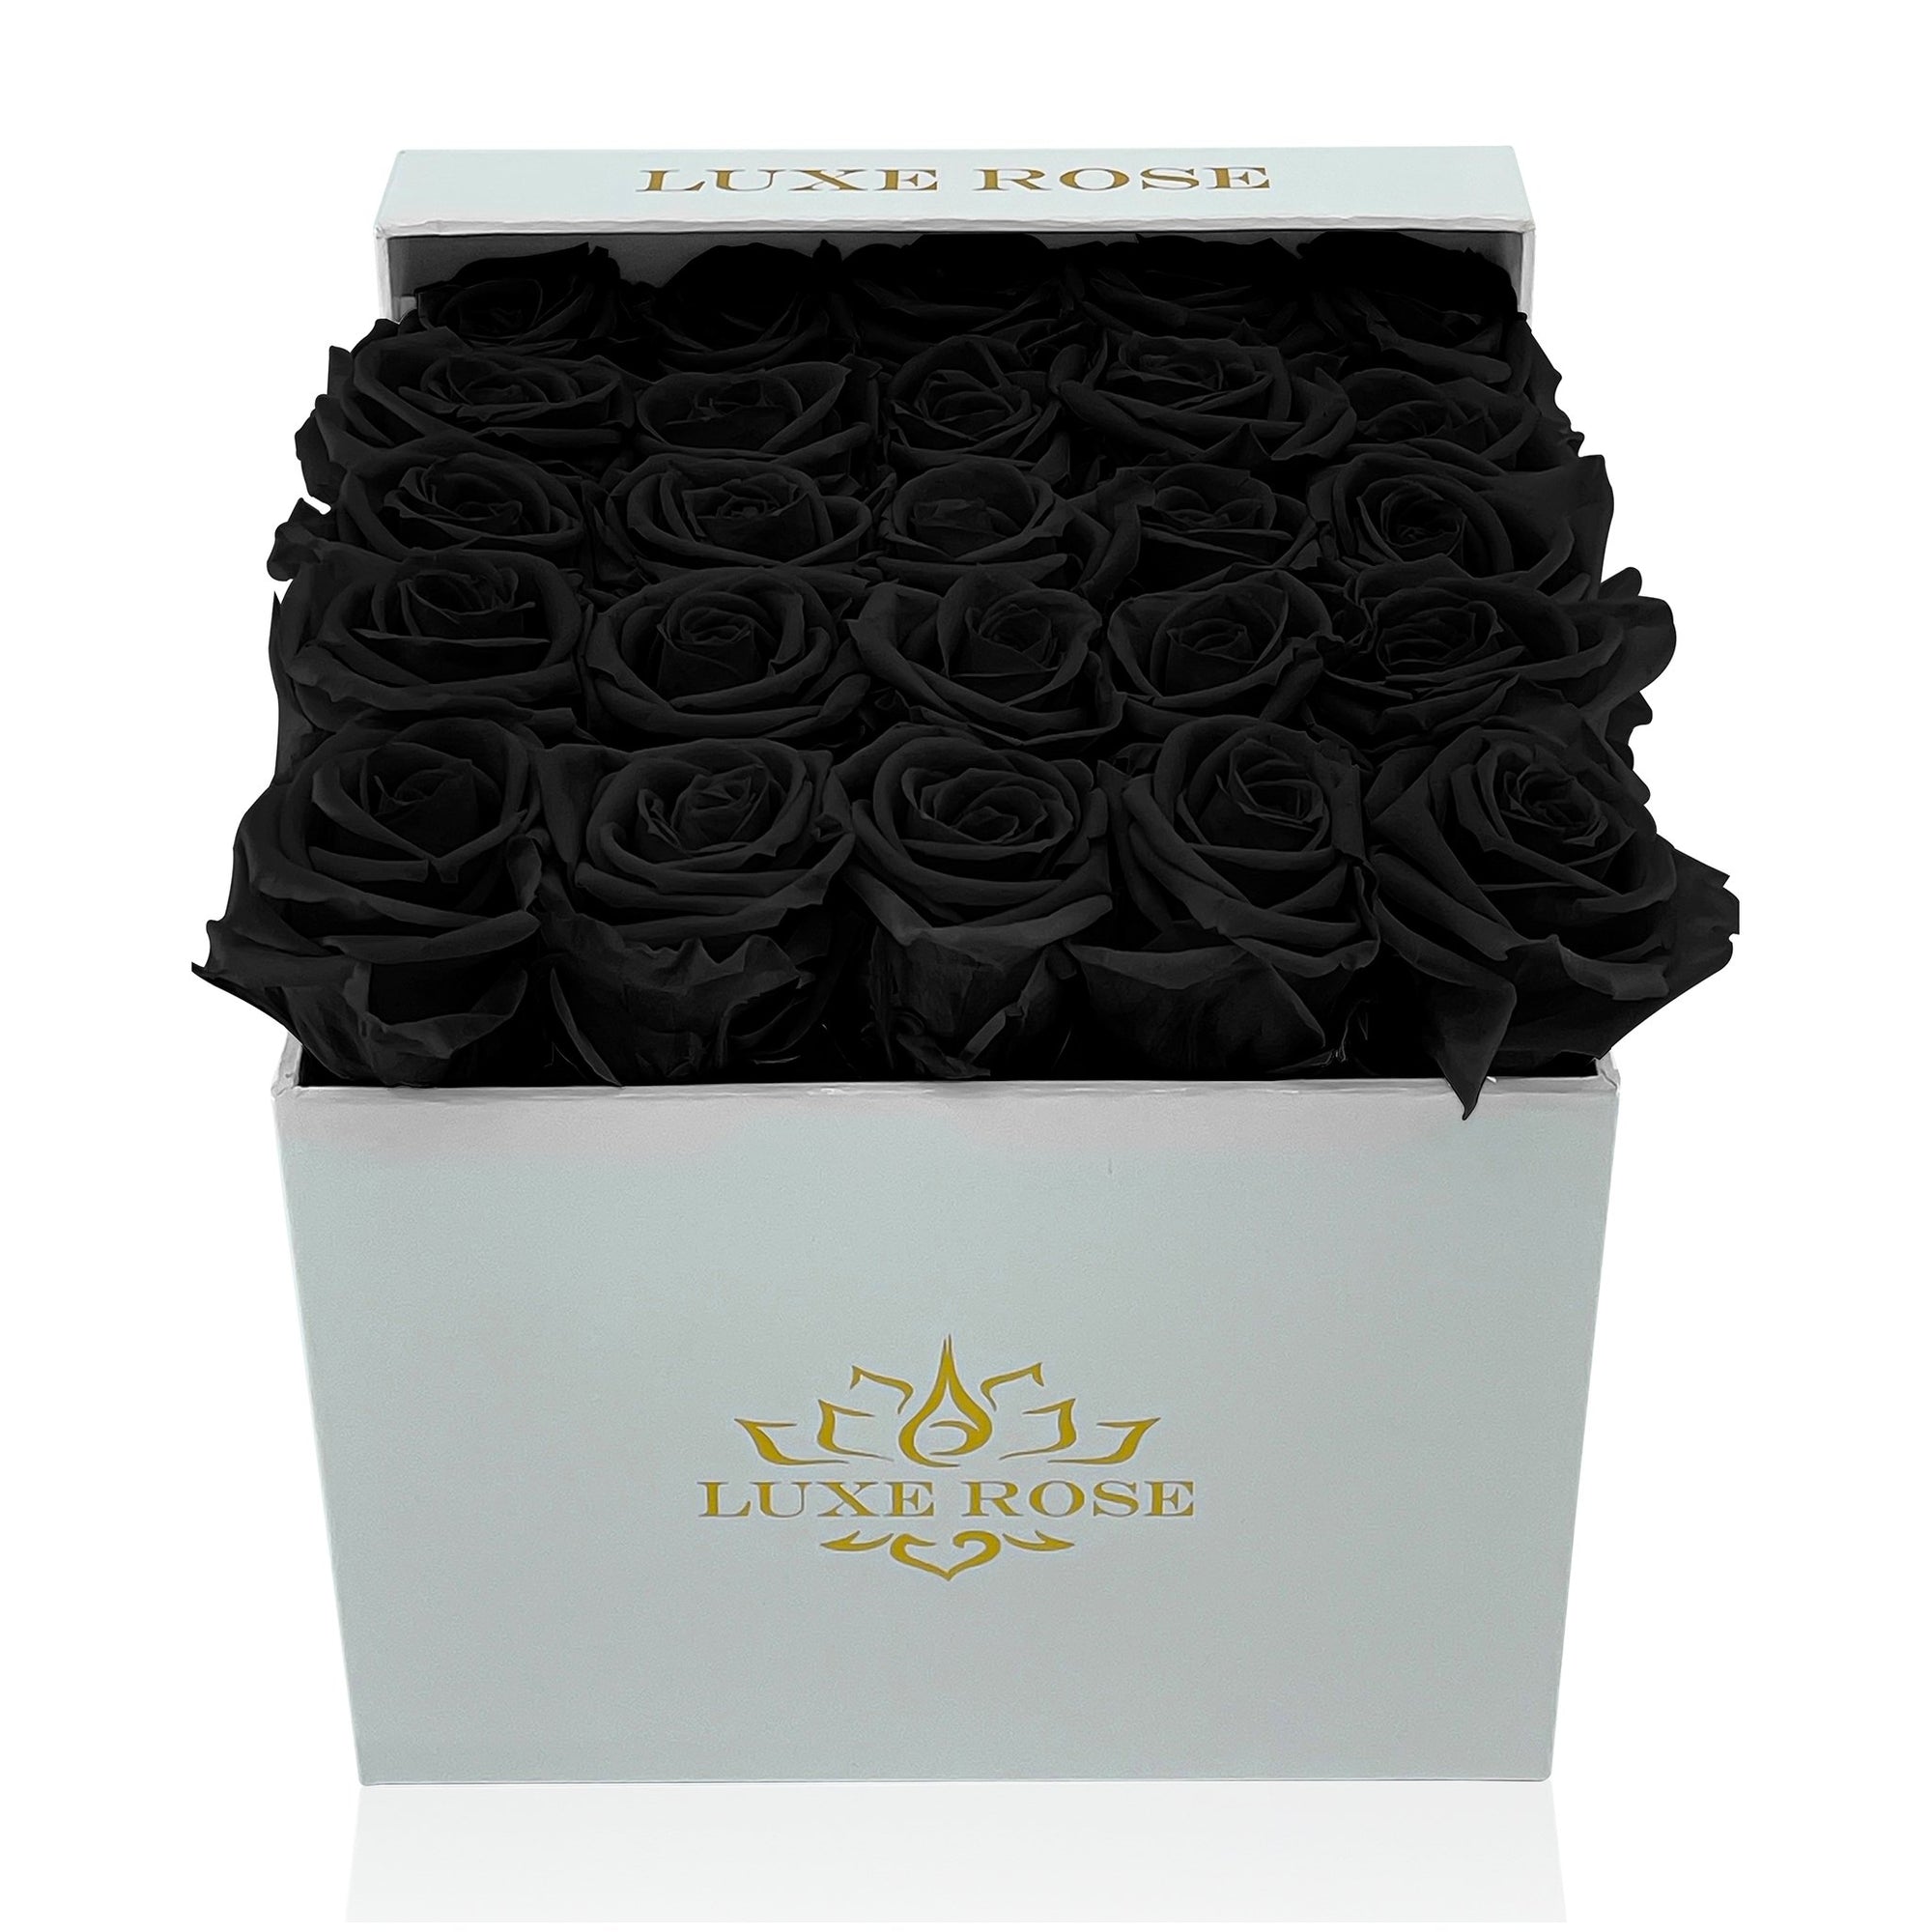 Preserved Roses Small Box | Black - White - Roses